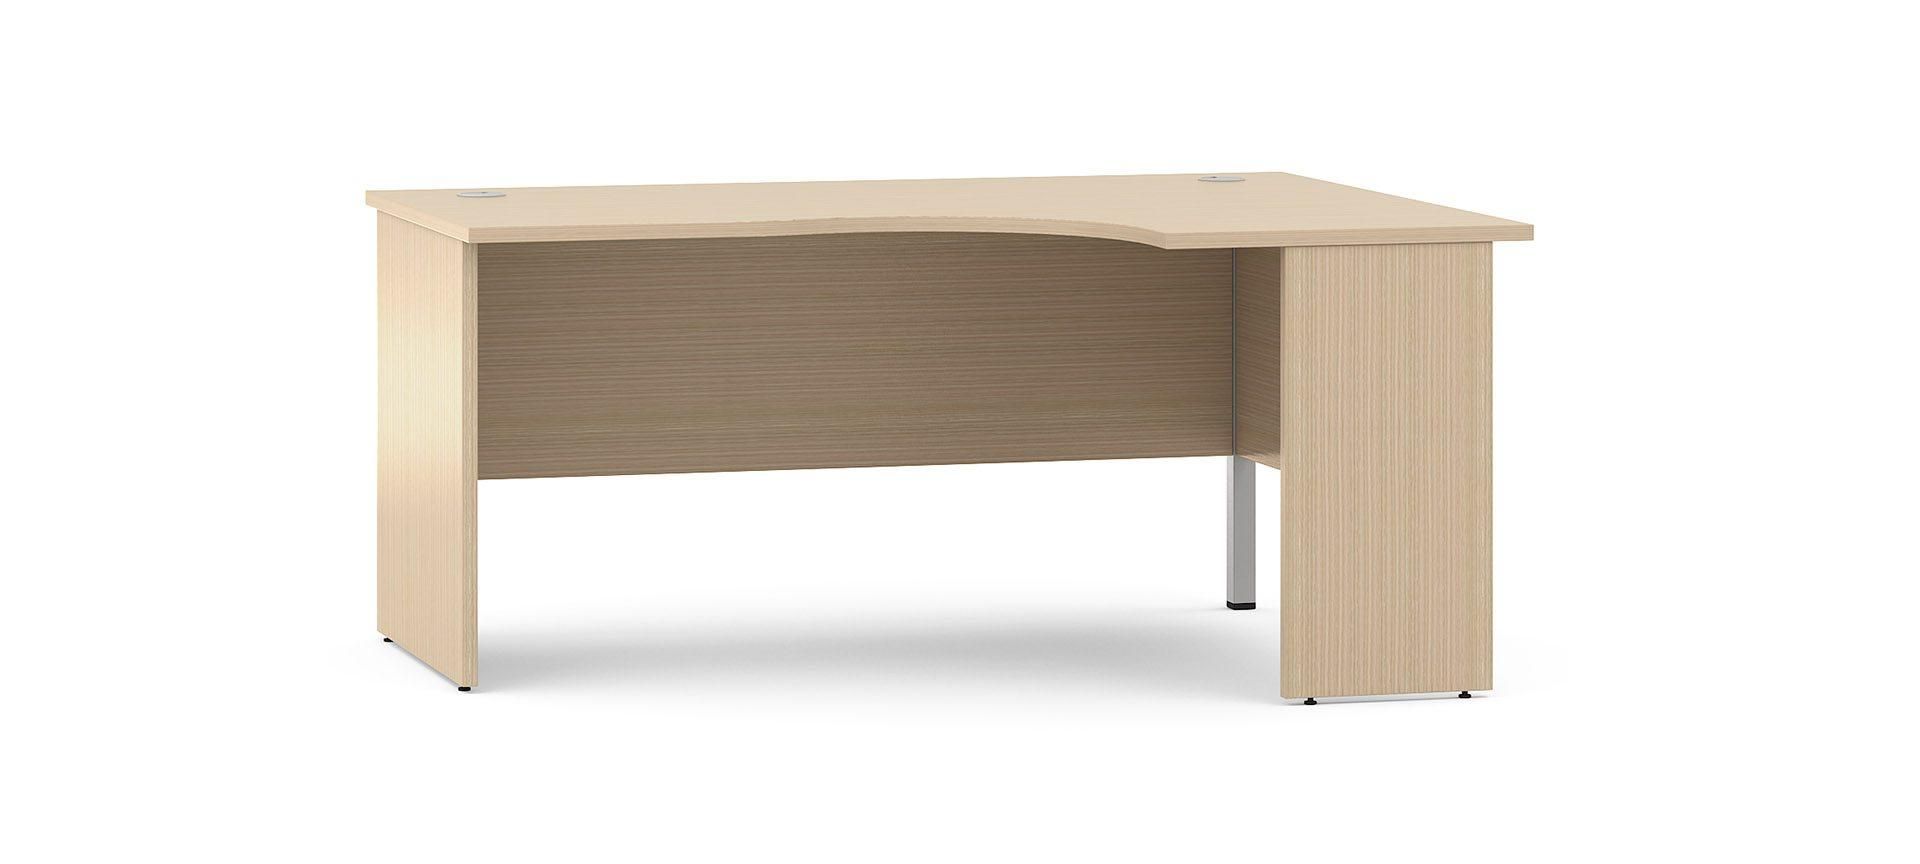 Optima plus - bureau d'angle - narbutas furniture company uab - hauteur de bureau : 720 mm_0